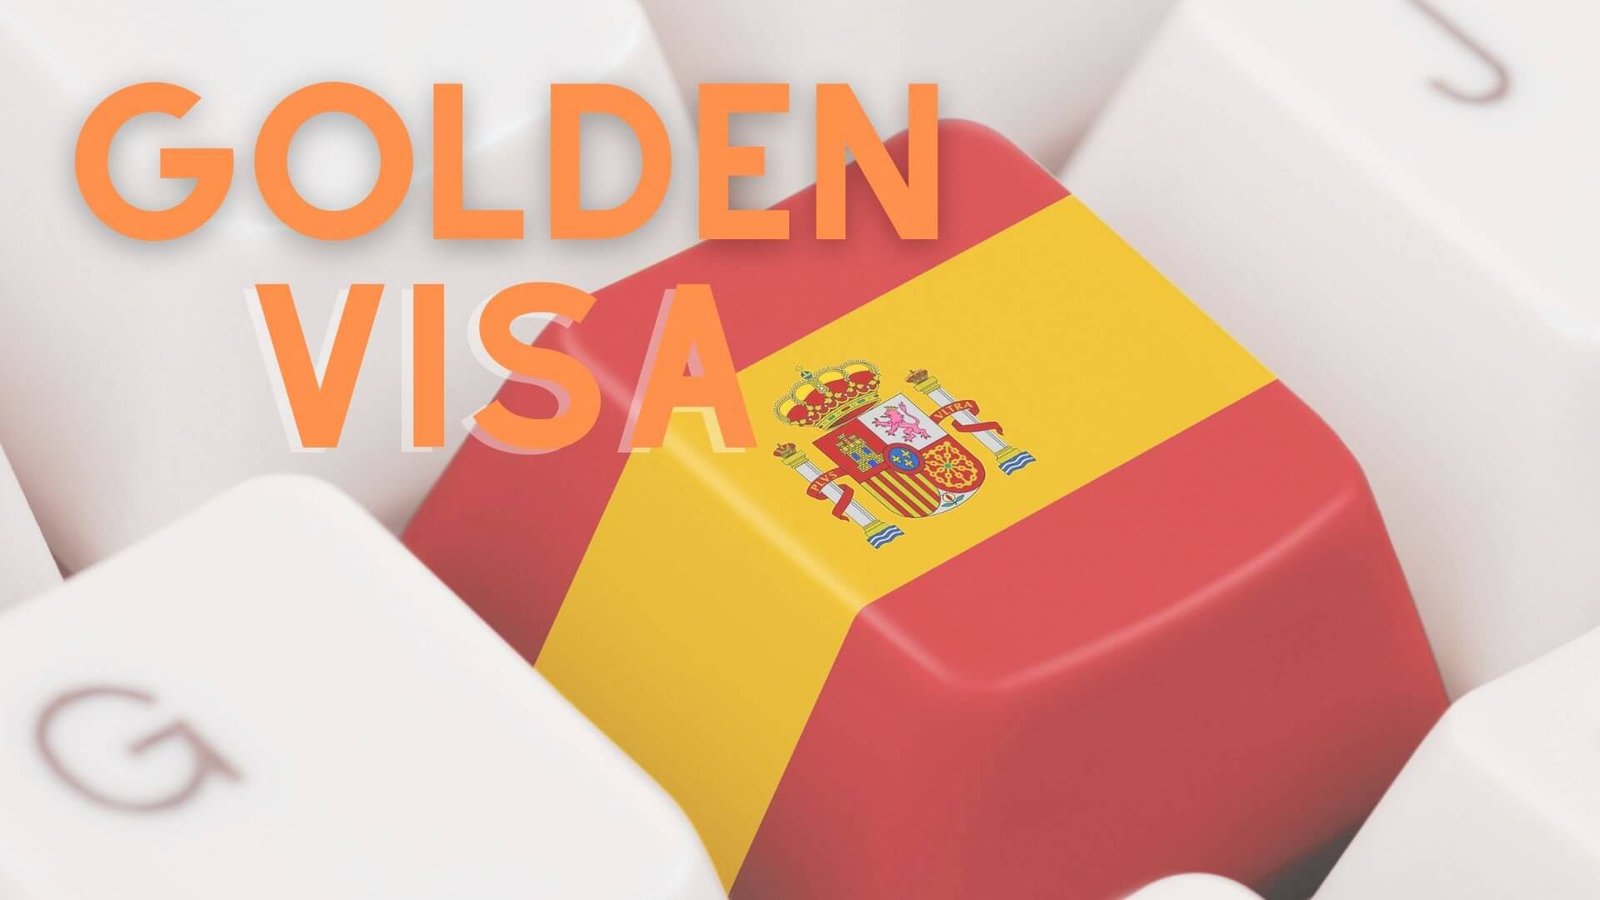 Golden visa España tecla